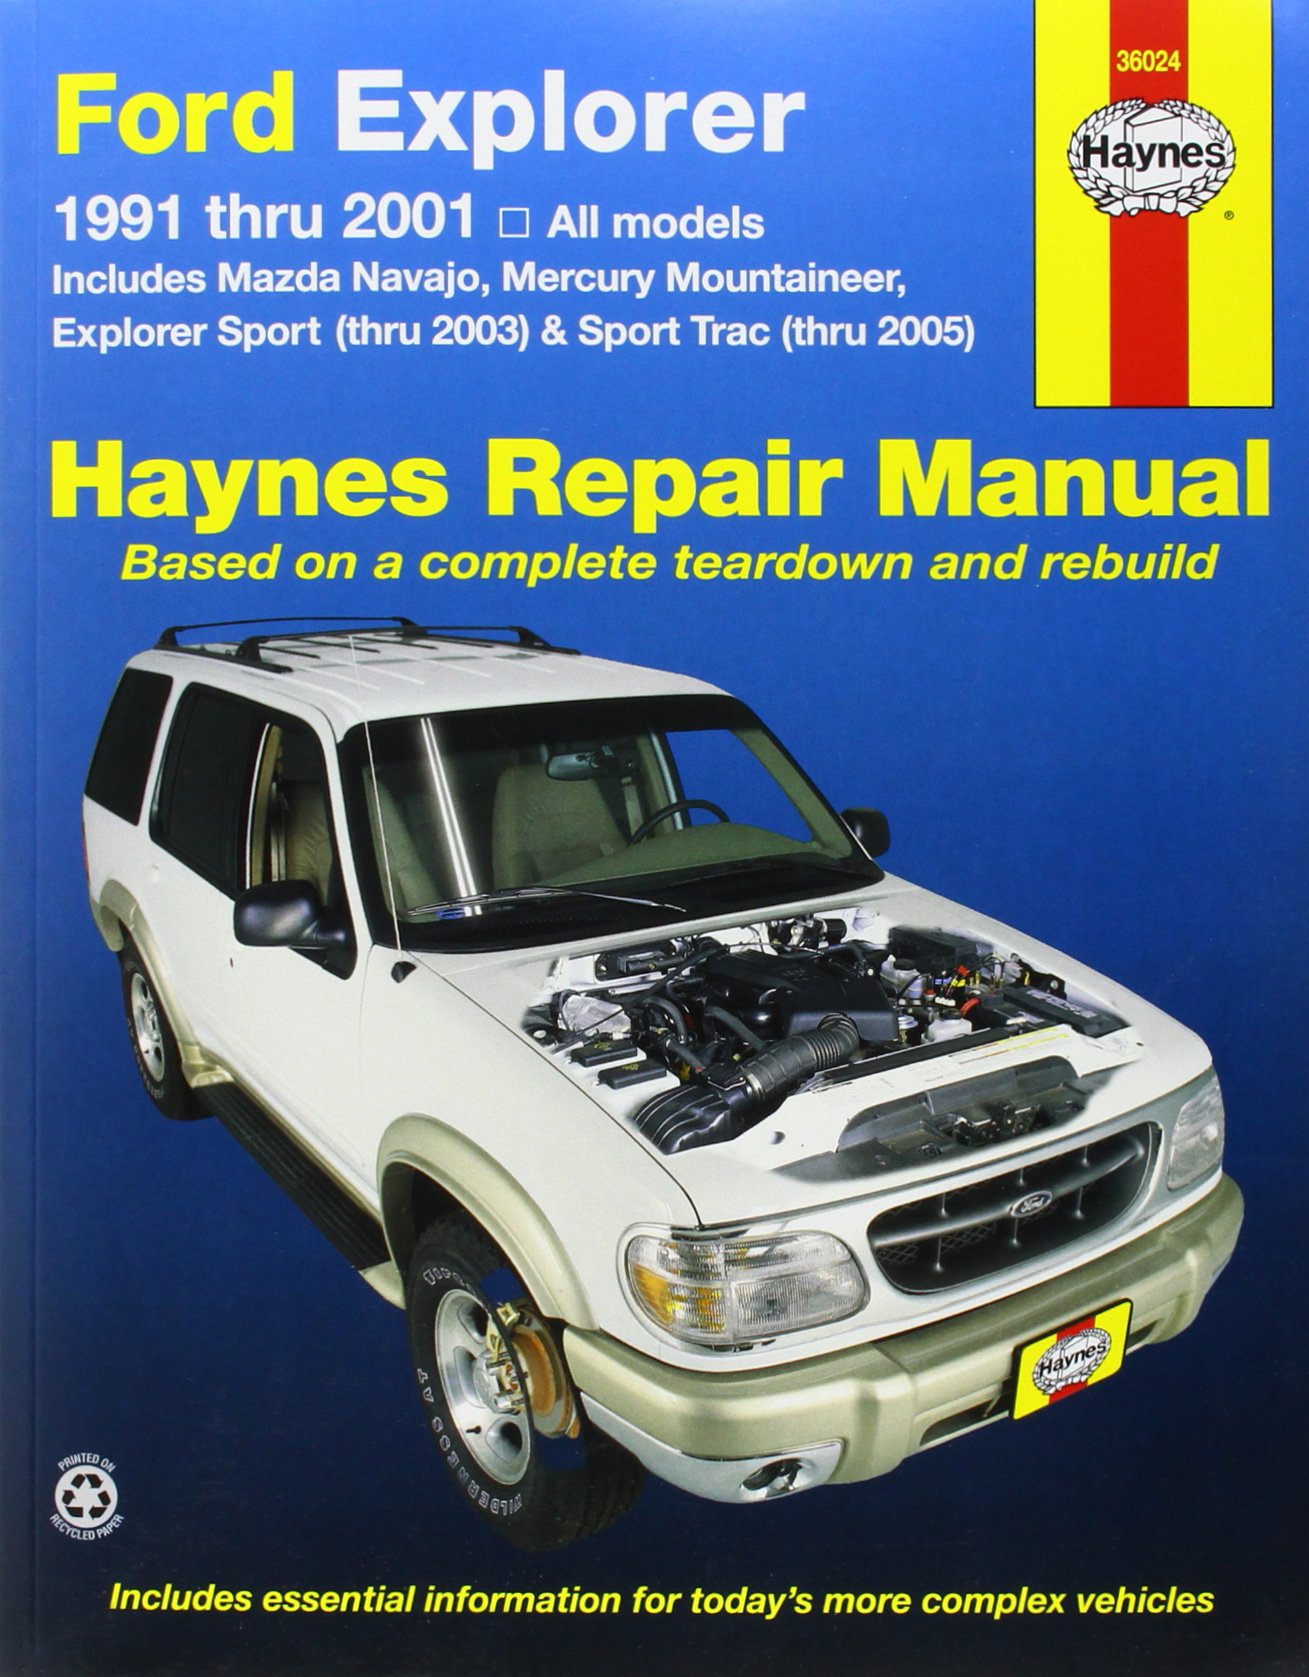 Repair Manual Haynes 36024 Ford Explorer 1991 2001 Pdf Free Download